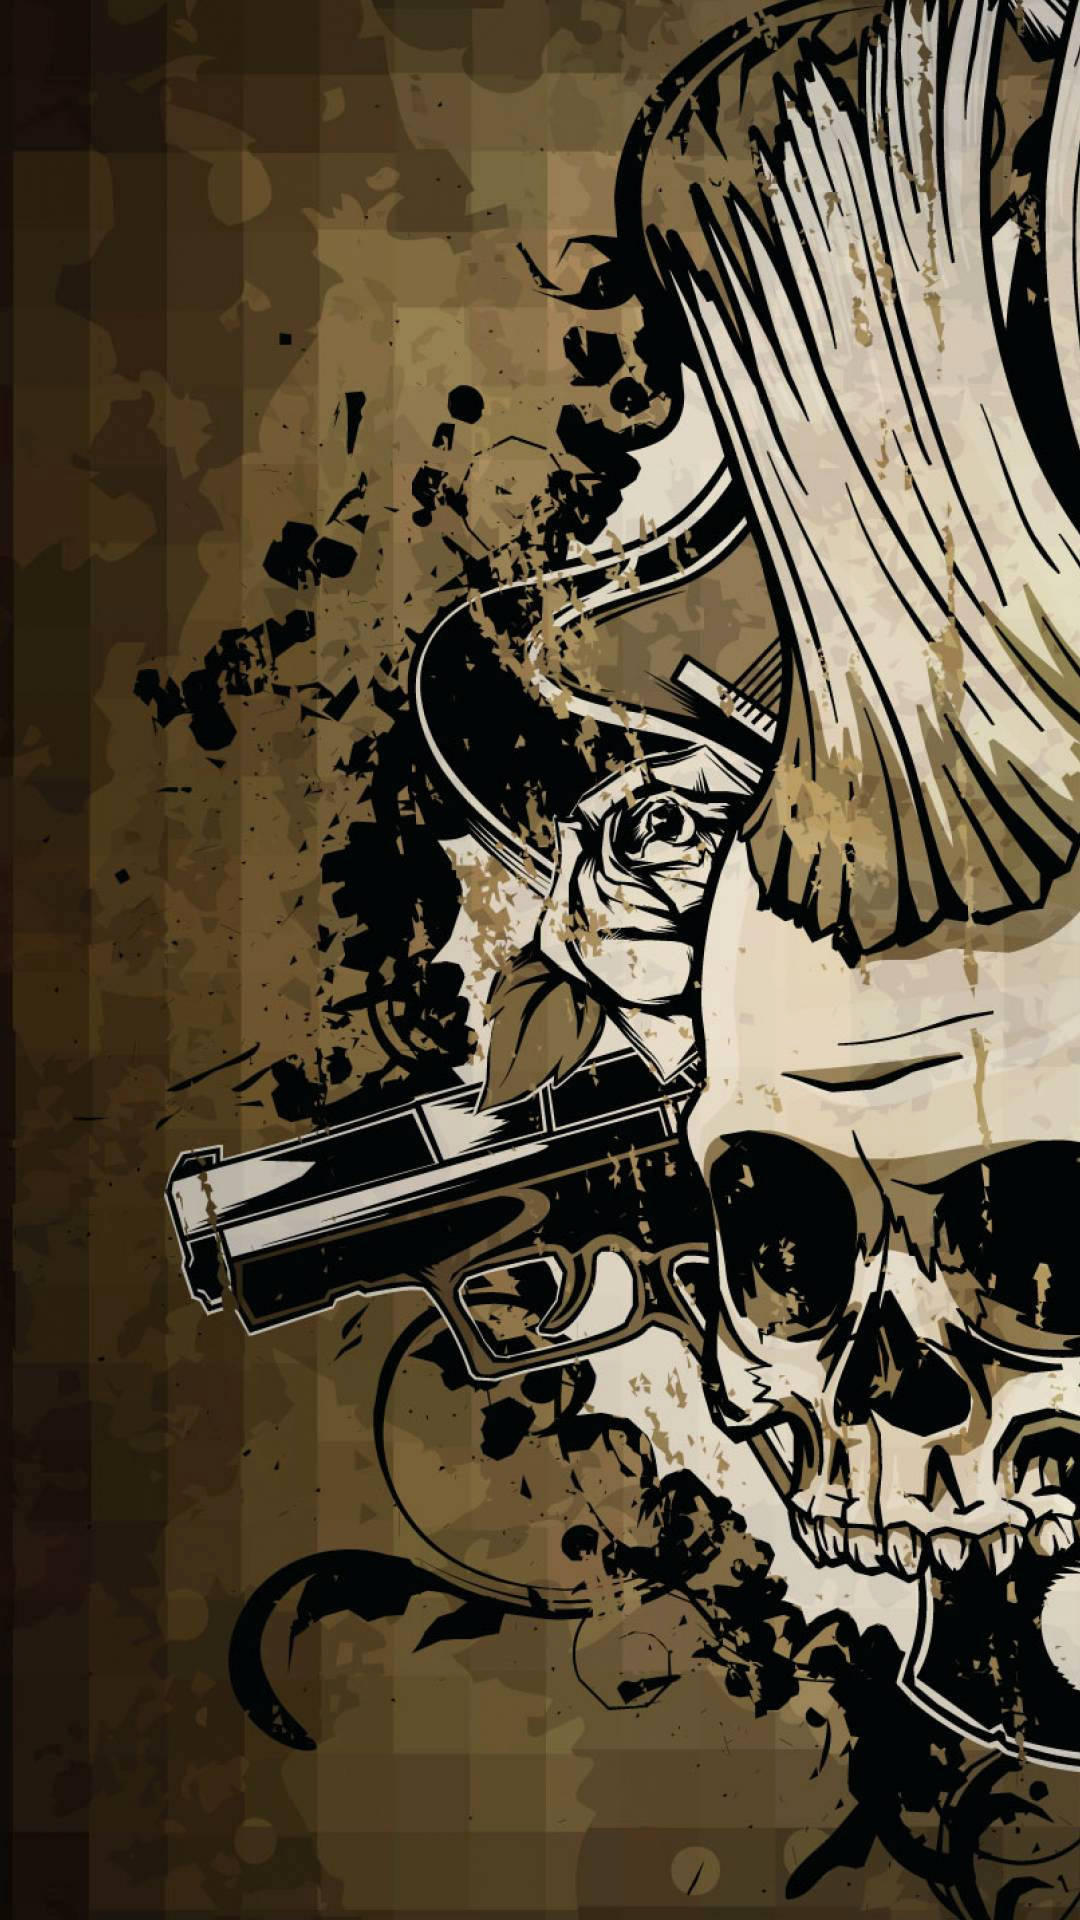 Det ikoniske Knoglen af The Punisher stirrer ud fra dette tapet. Wallpaper